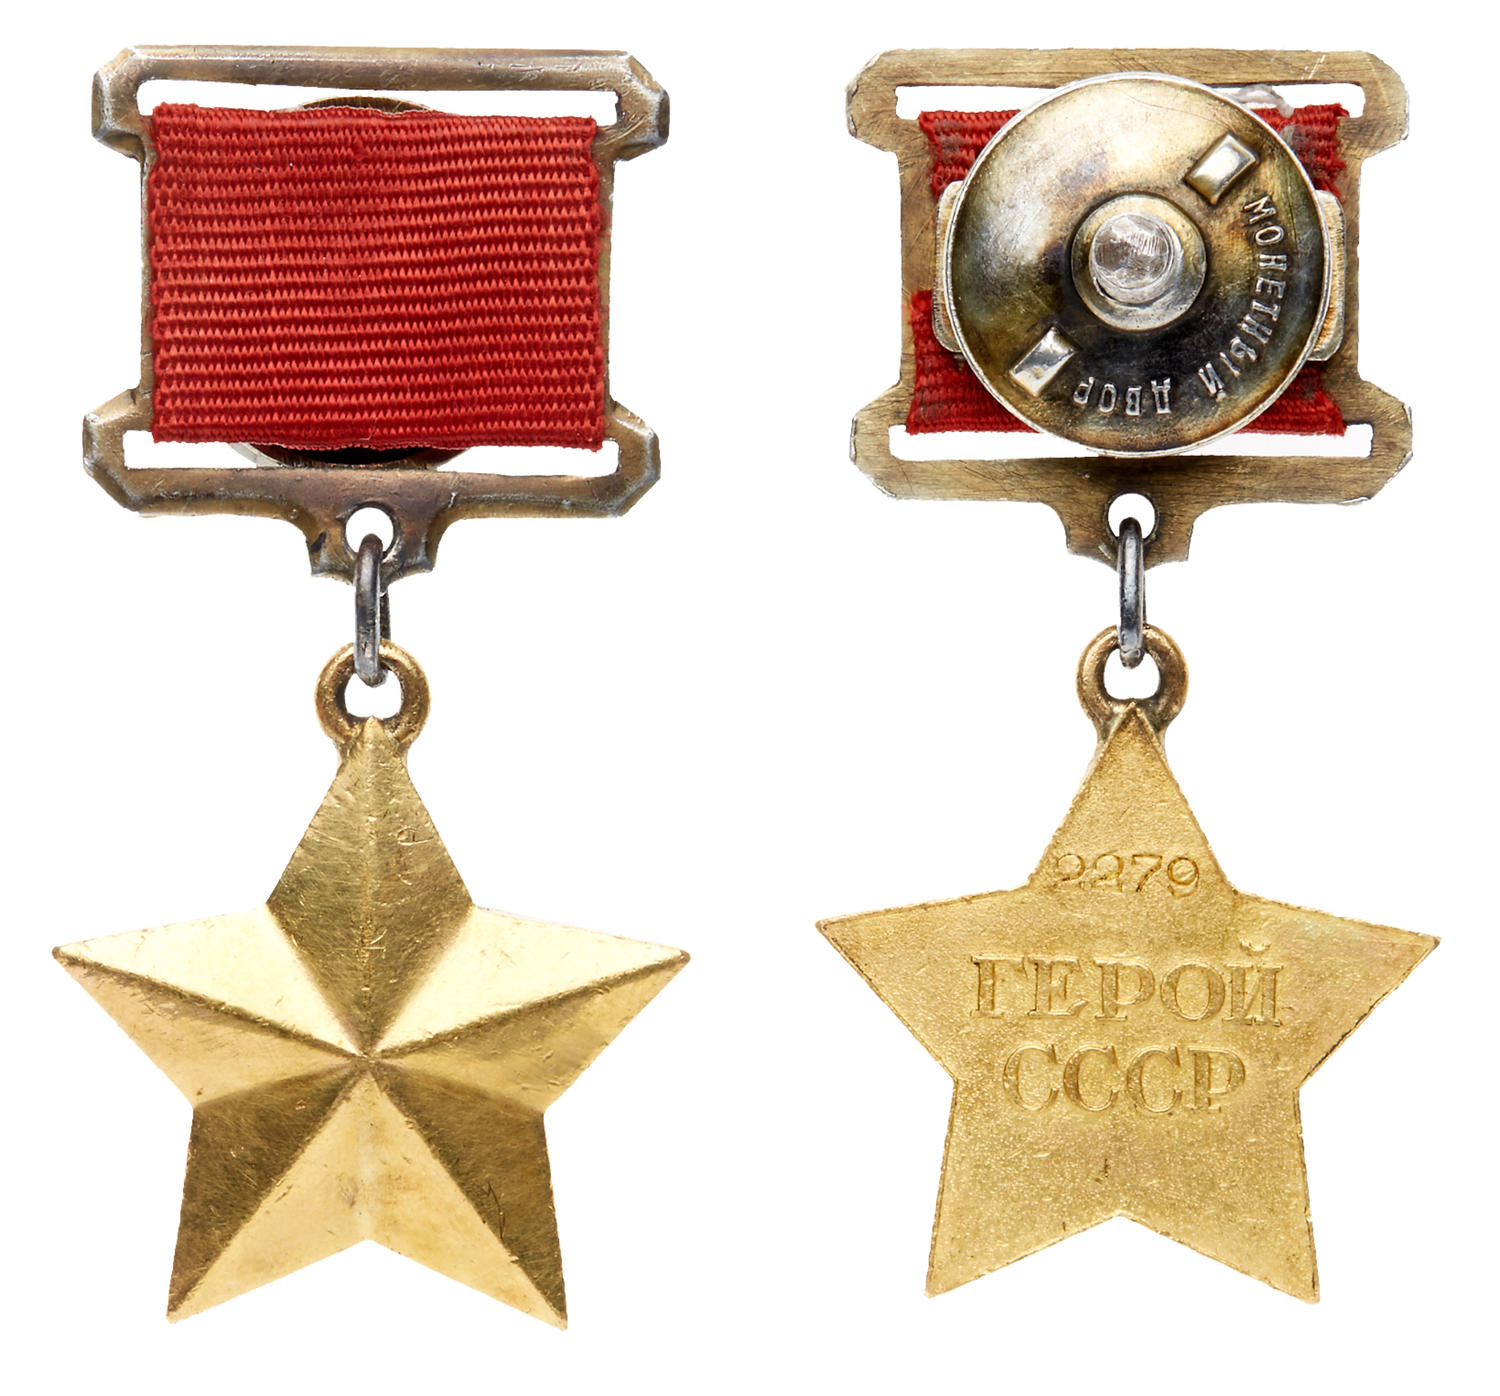 Медаль красной звезды фото